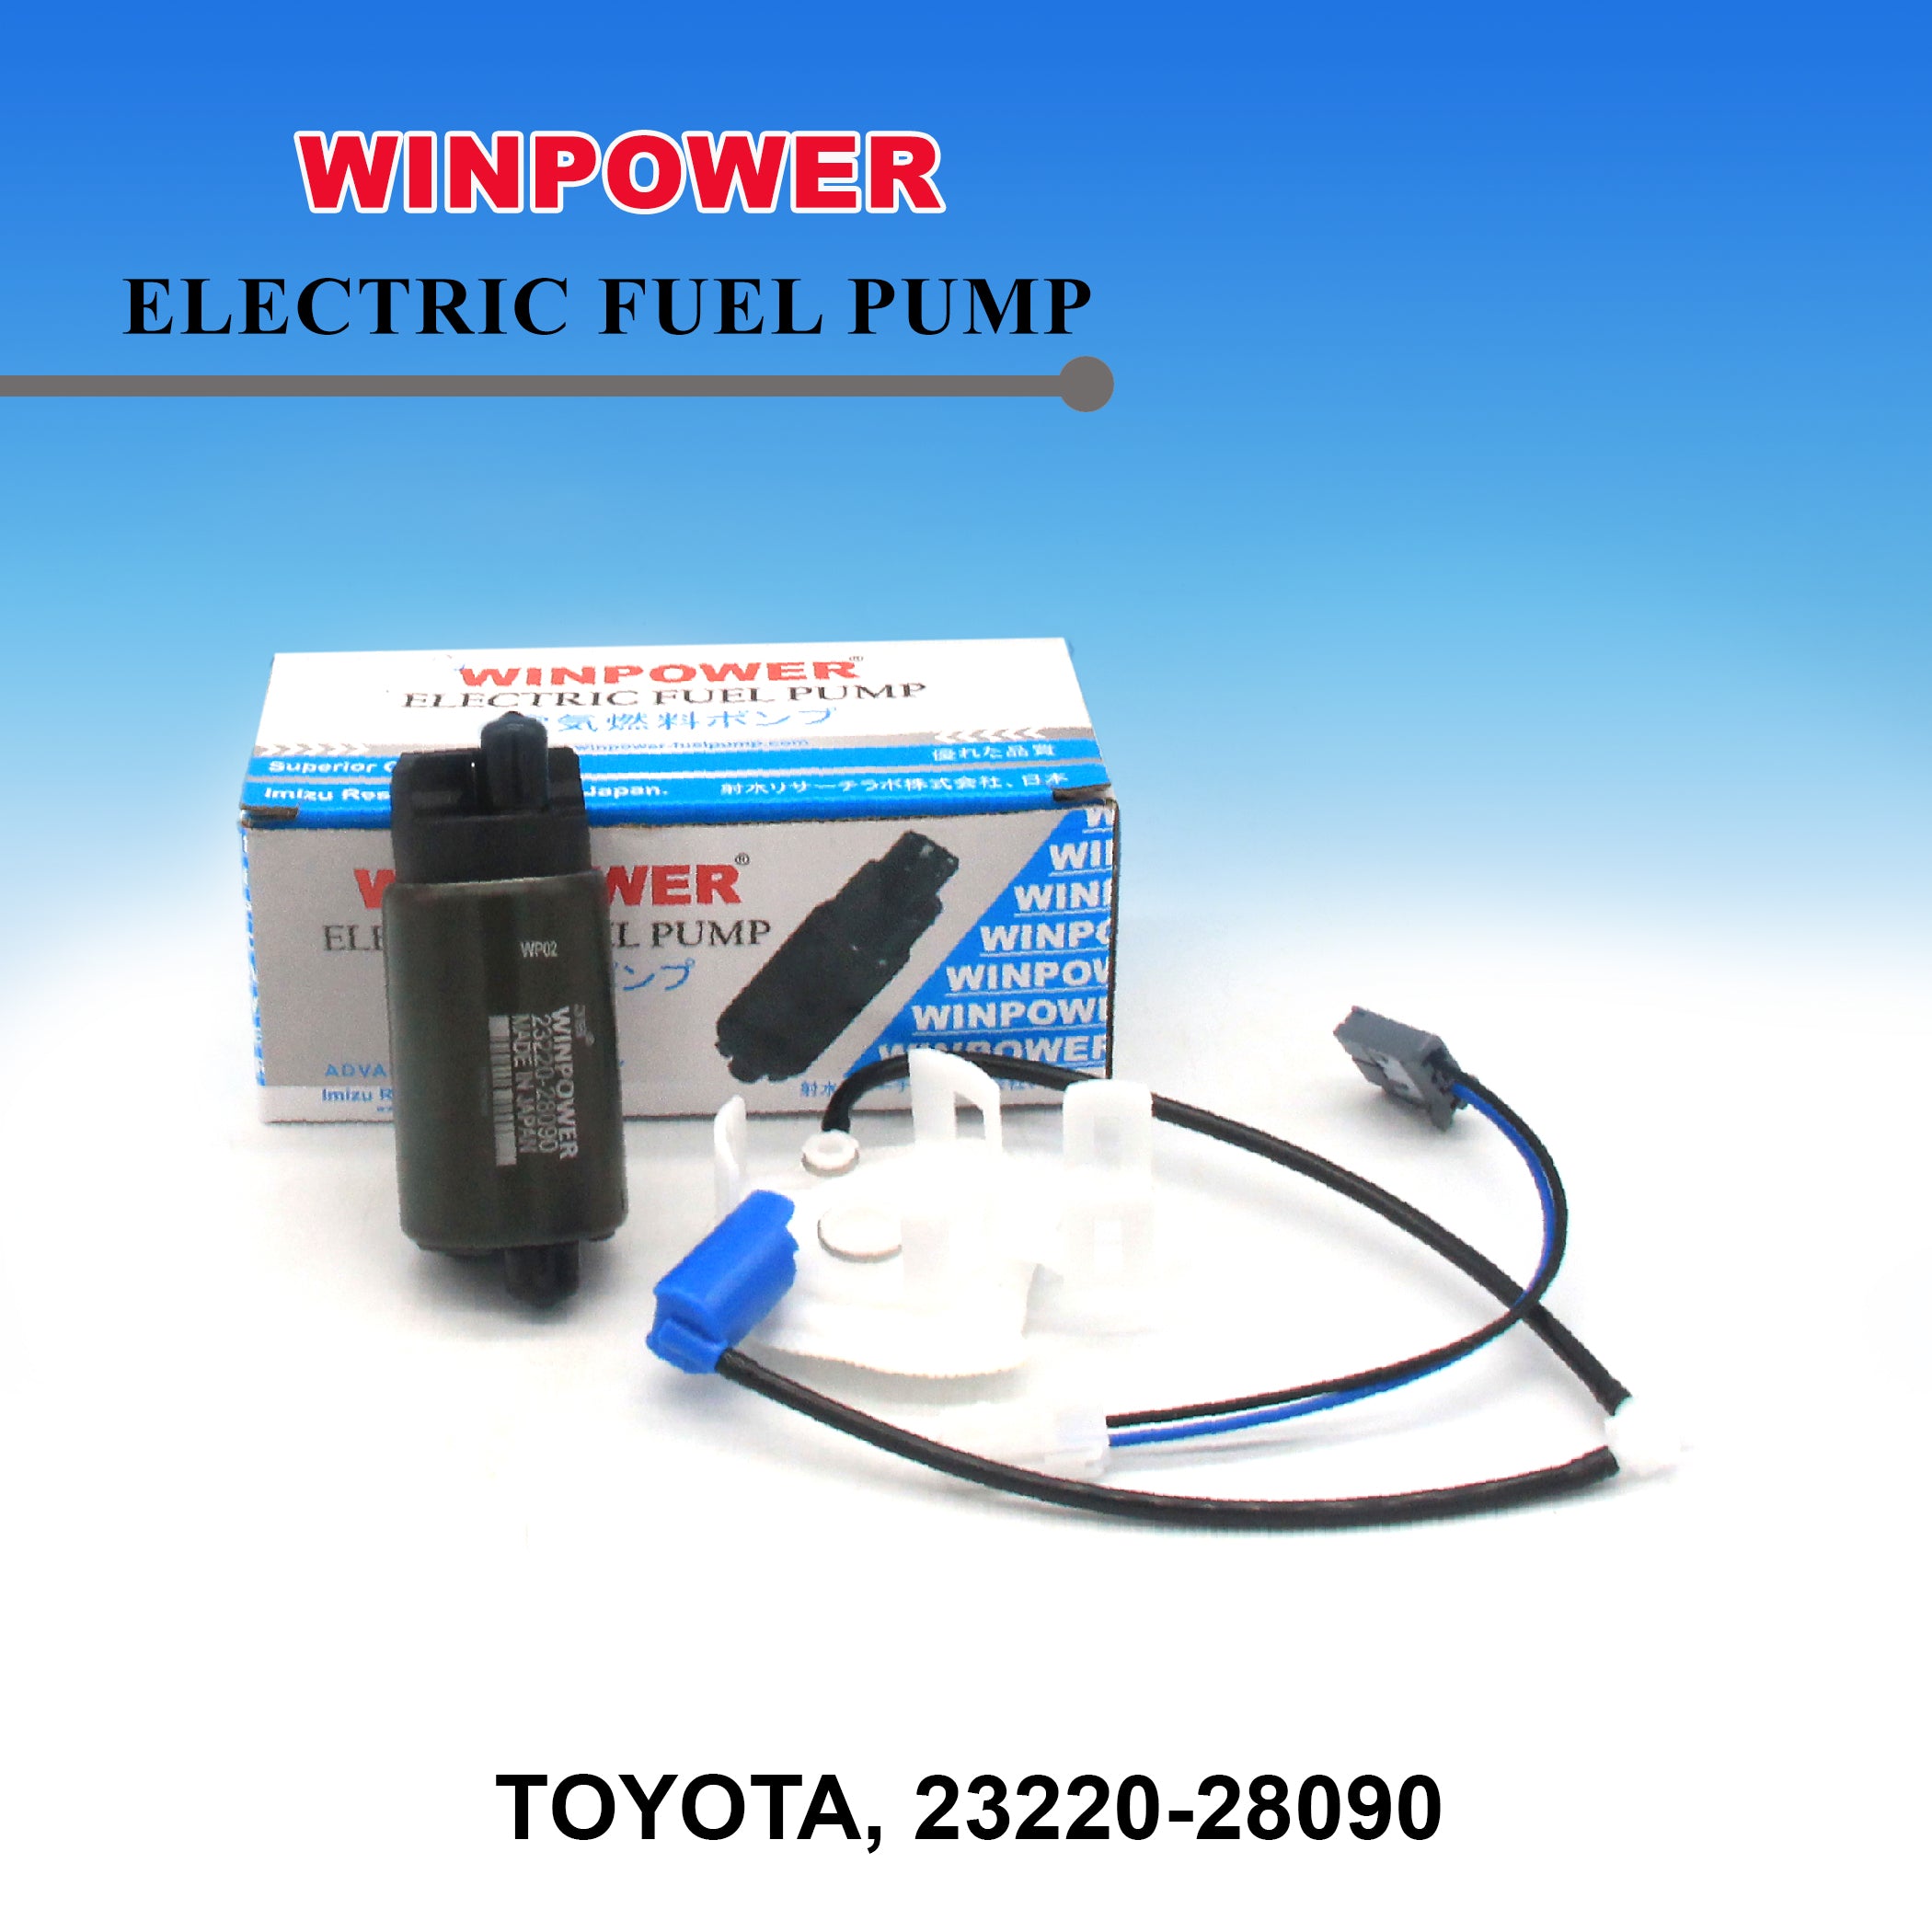 In-Tank Fuel Pump, WINPOWER, 23220-28090, WF-3826 (000882)